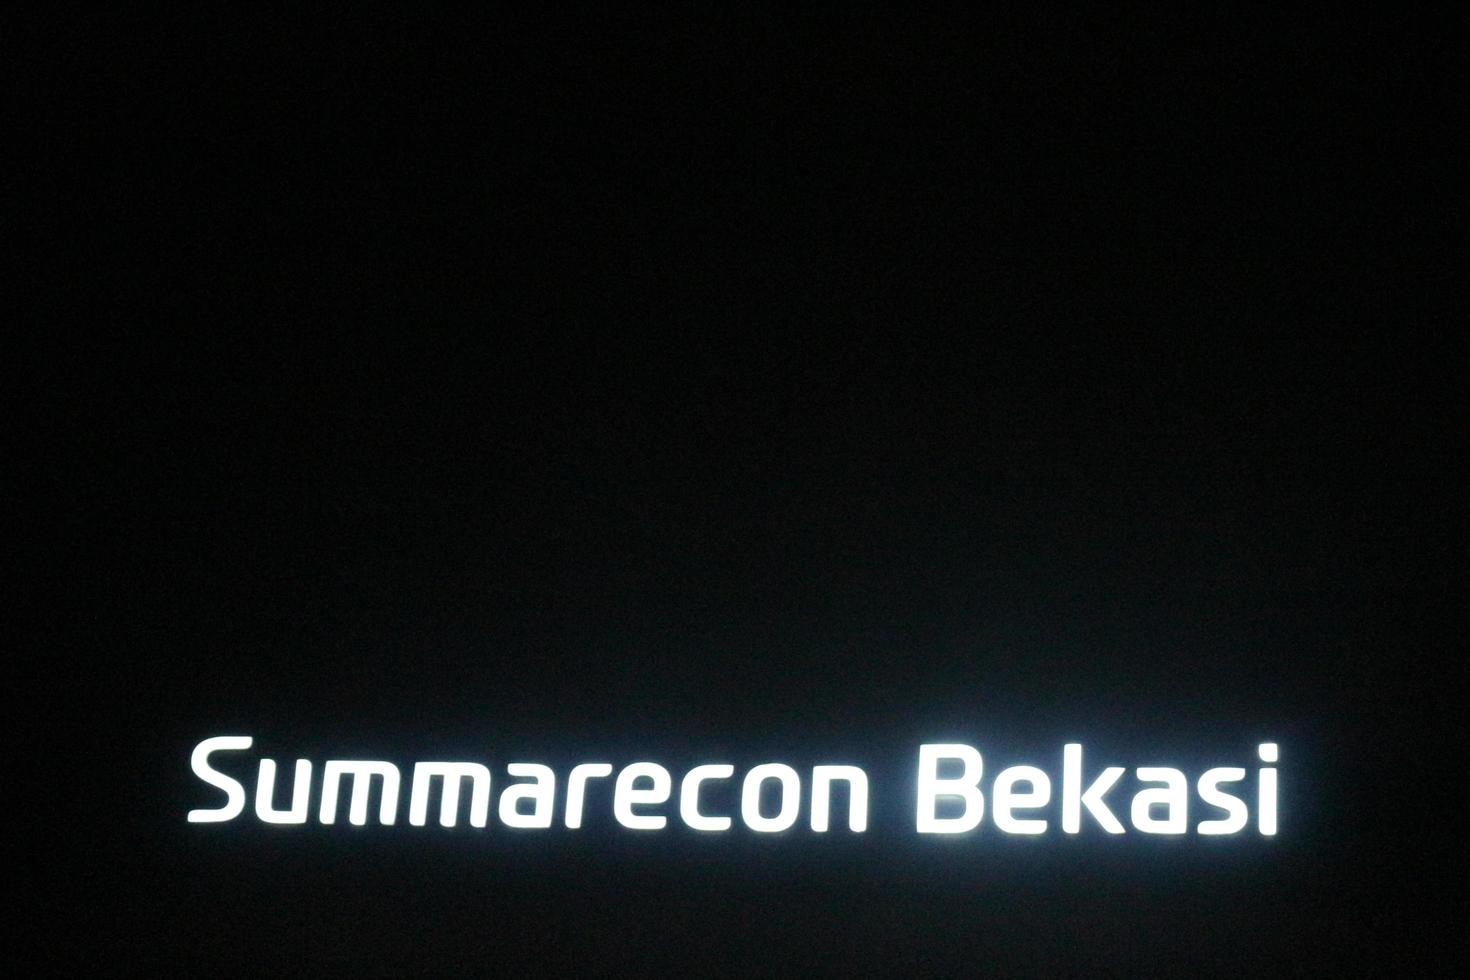 bekasi, indonésie en juillet 2022. le logo summarecon bekasi brille de mille feux la nuit contre le ciel nocturne sombre. photo